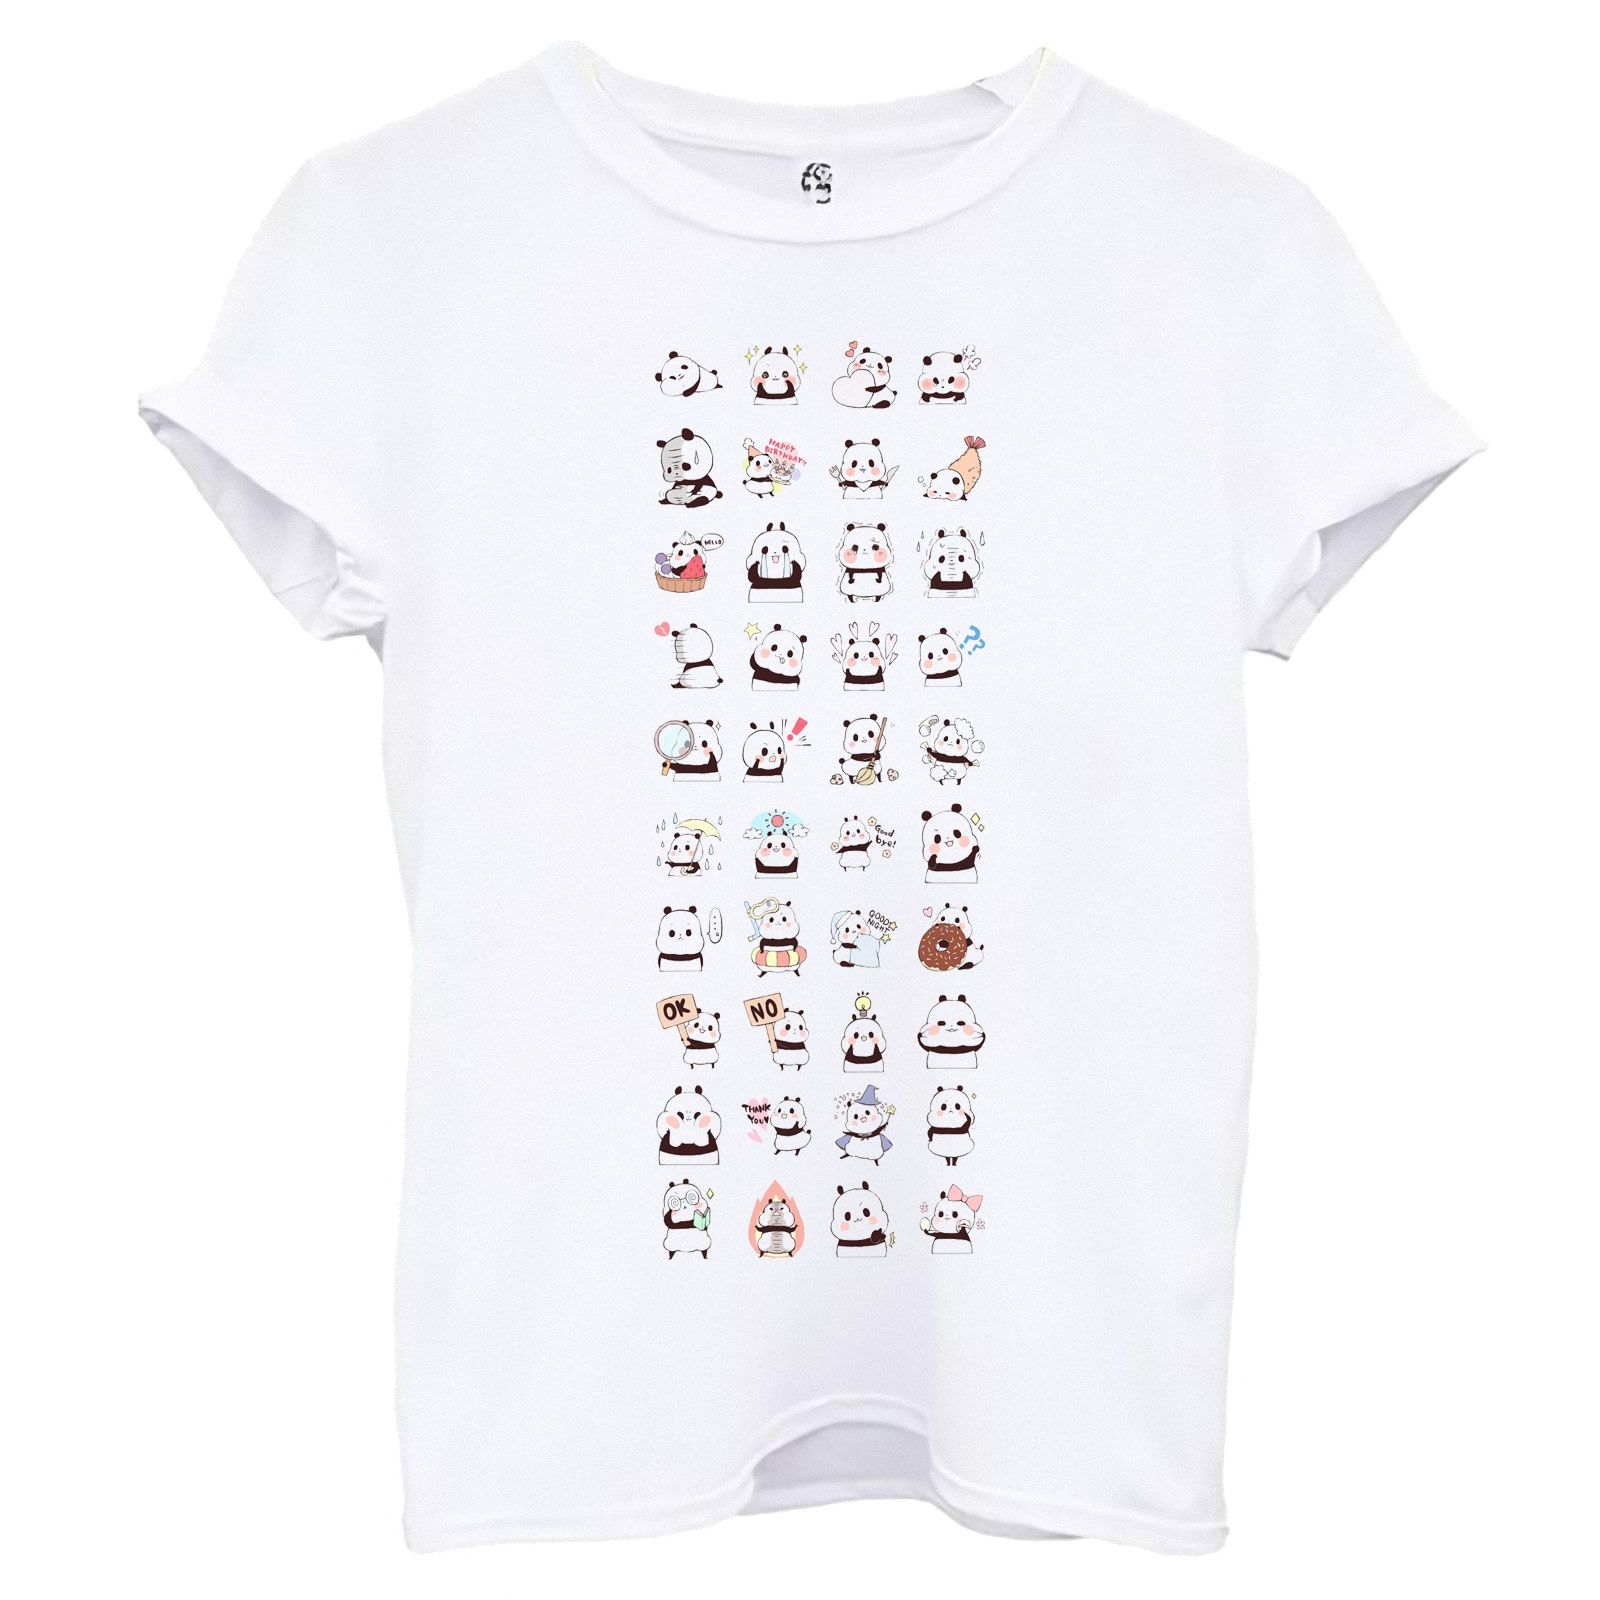 تی شرت آستین کوتاه زنانه اسد طرح پاندا کد 98 -  - 1